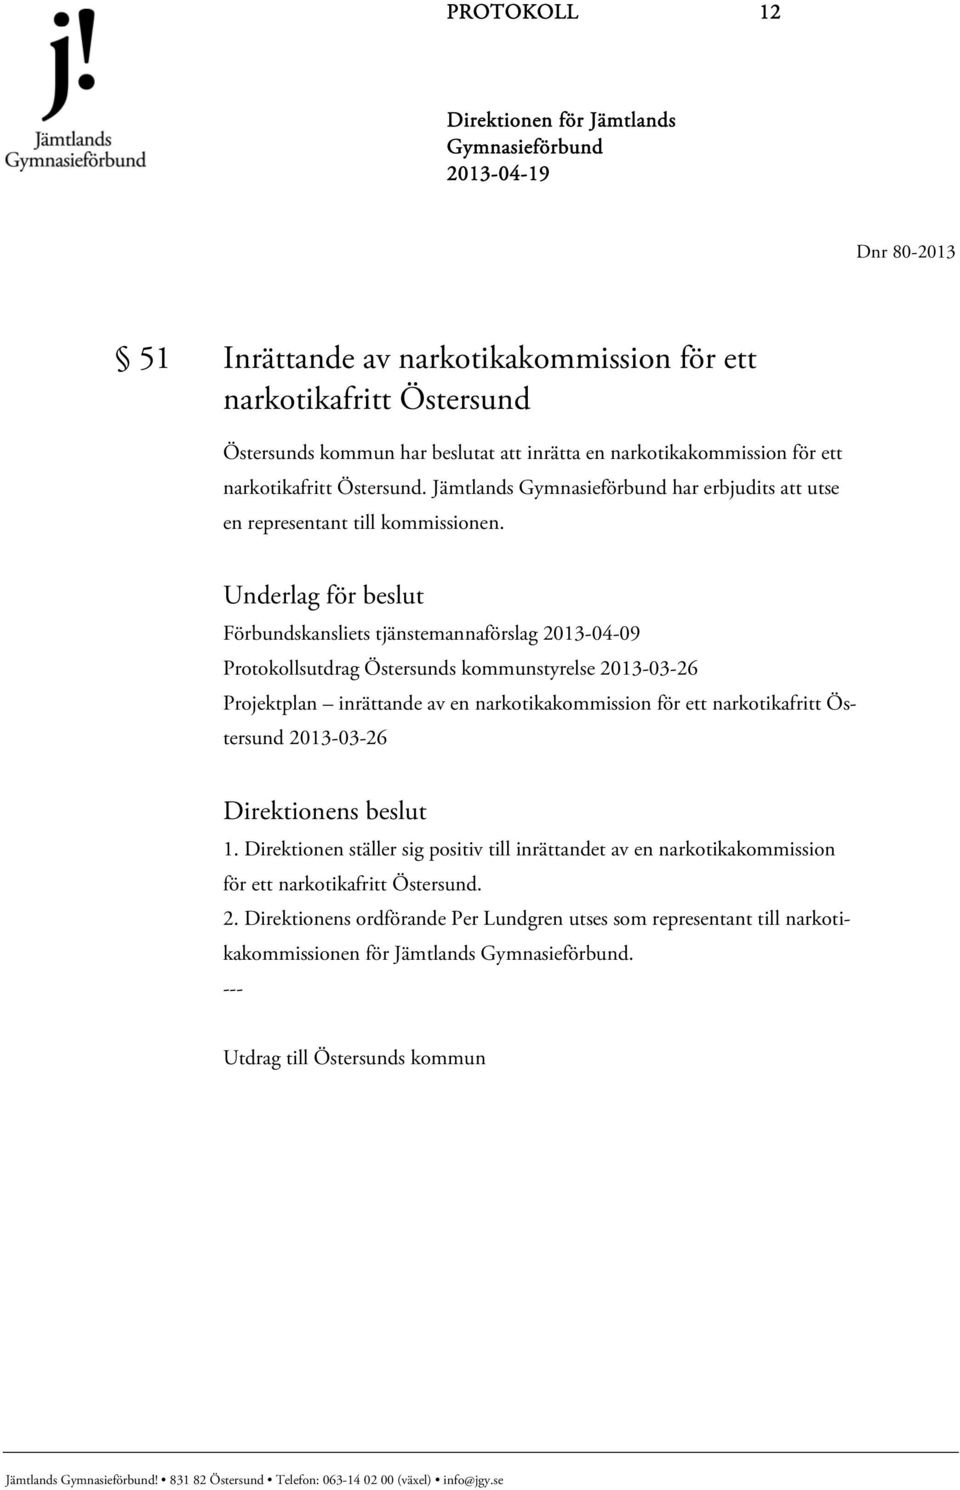 Underlag för beslut Förbundskansliets tjänstemannaförslag 2013-04-09 Protokollsutdrag Östersunds kommunstyrelse 2013-03-26 Projektplan inrättande av en narkotikakommission för ett